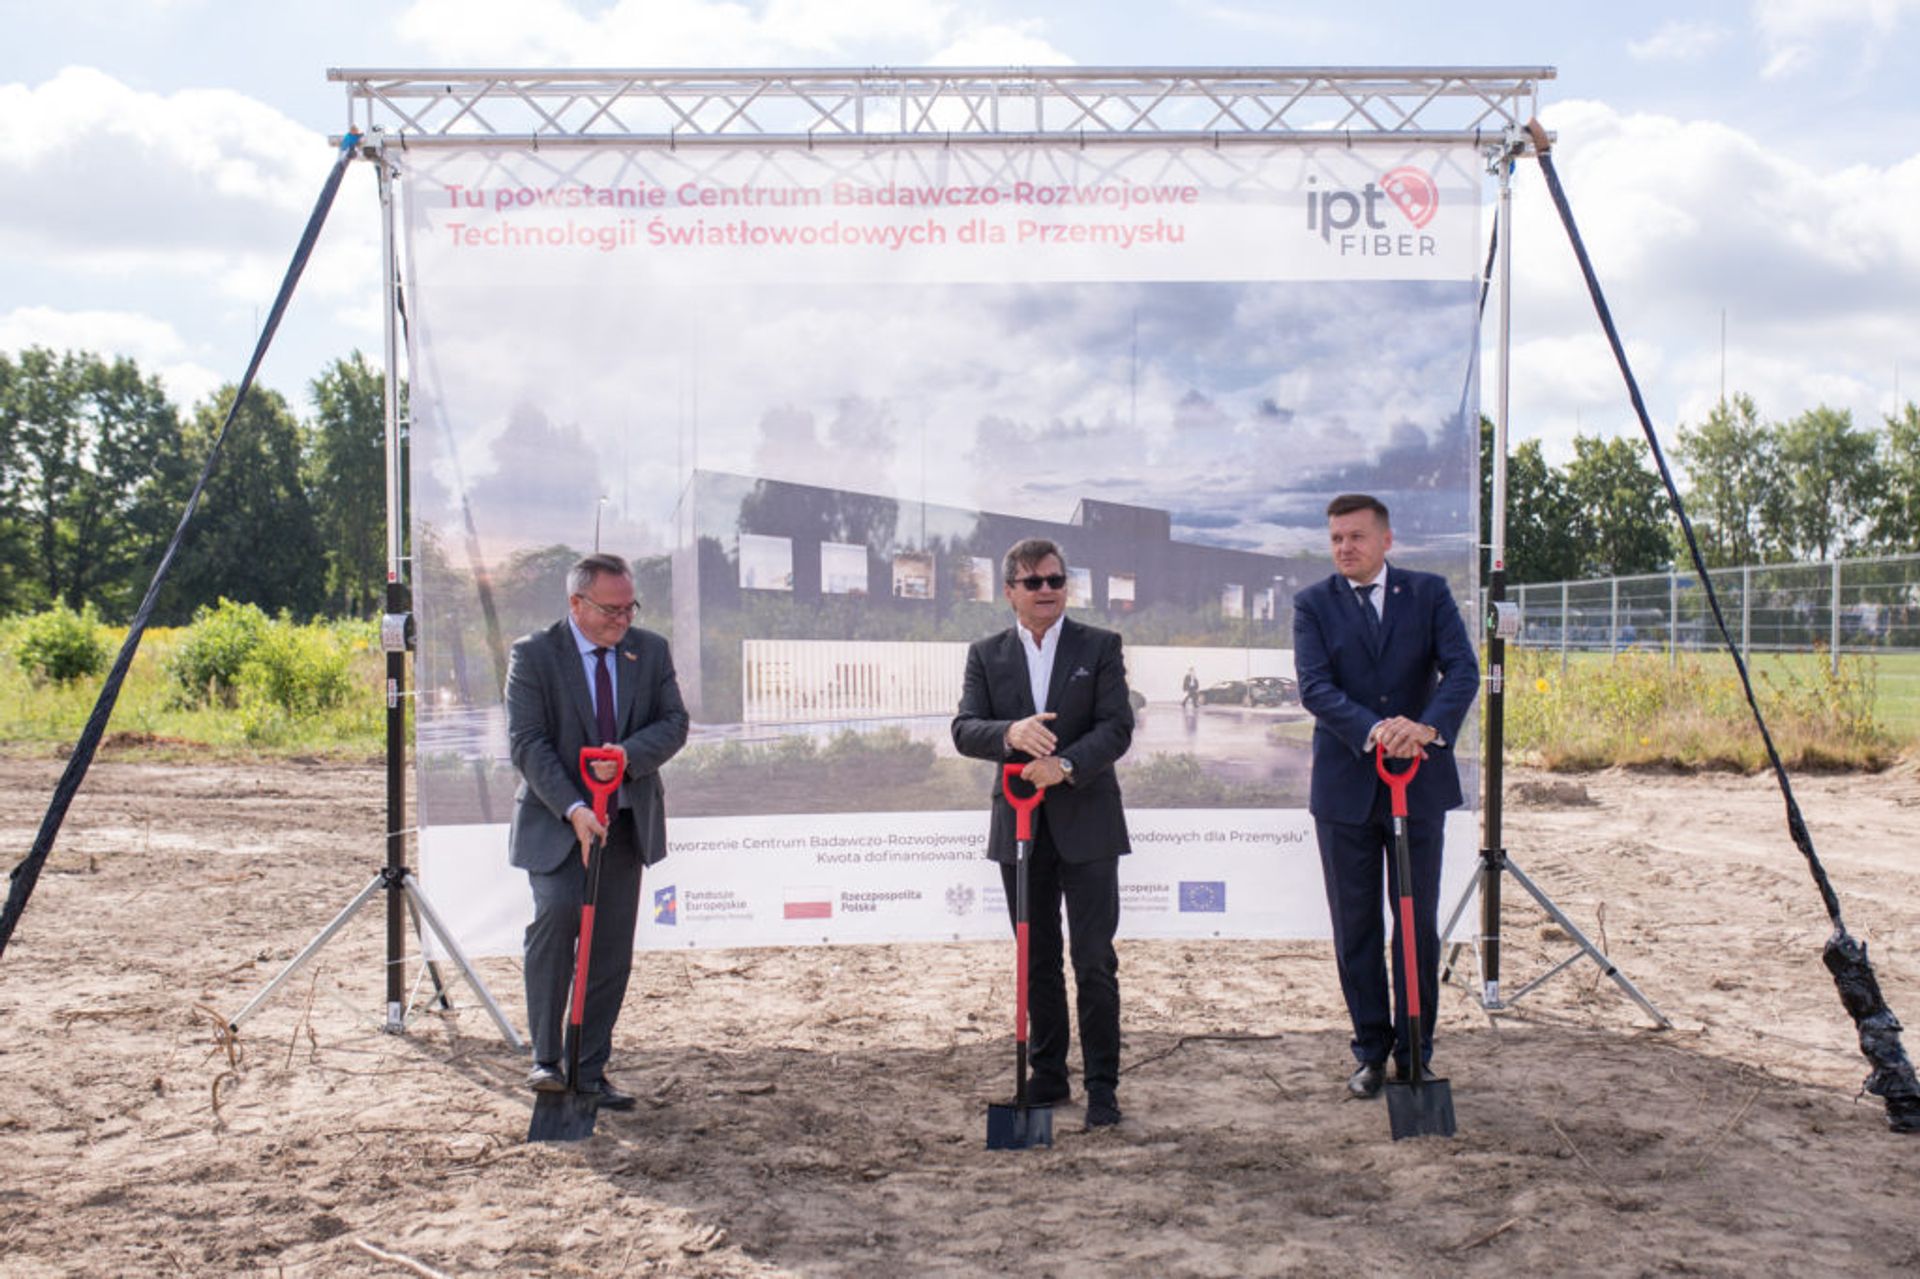 W Lubartowie rusza budowa Centrum Badawczo-Rozwojowego Technologii Światłowodowych dla Przemysłu